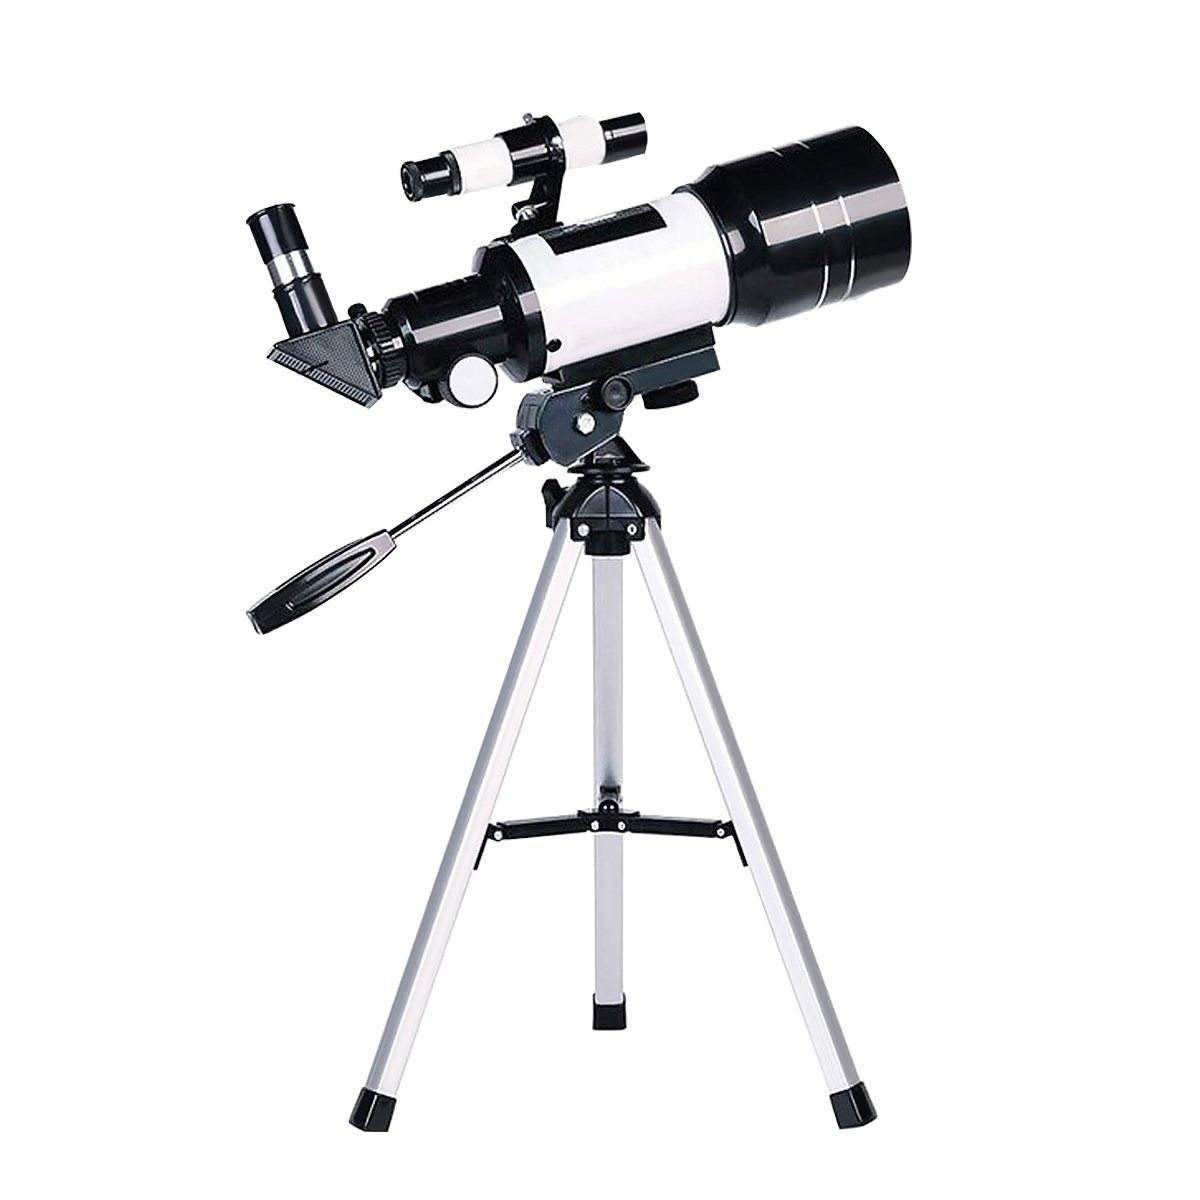 Insma Teleskop, Teleskop für Kinder und Anfänger, 70 mm Öffnung, 300 mm  astronomisches Refraktor-Teleskop, Stativ und Sucherfernrohr tragbares  Reiseteleskop